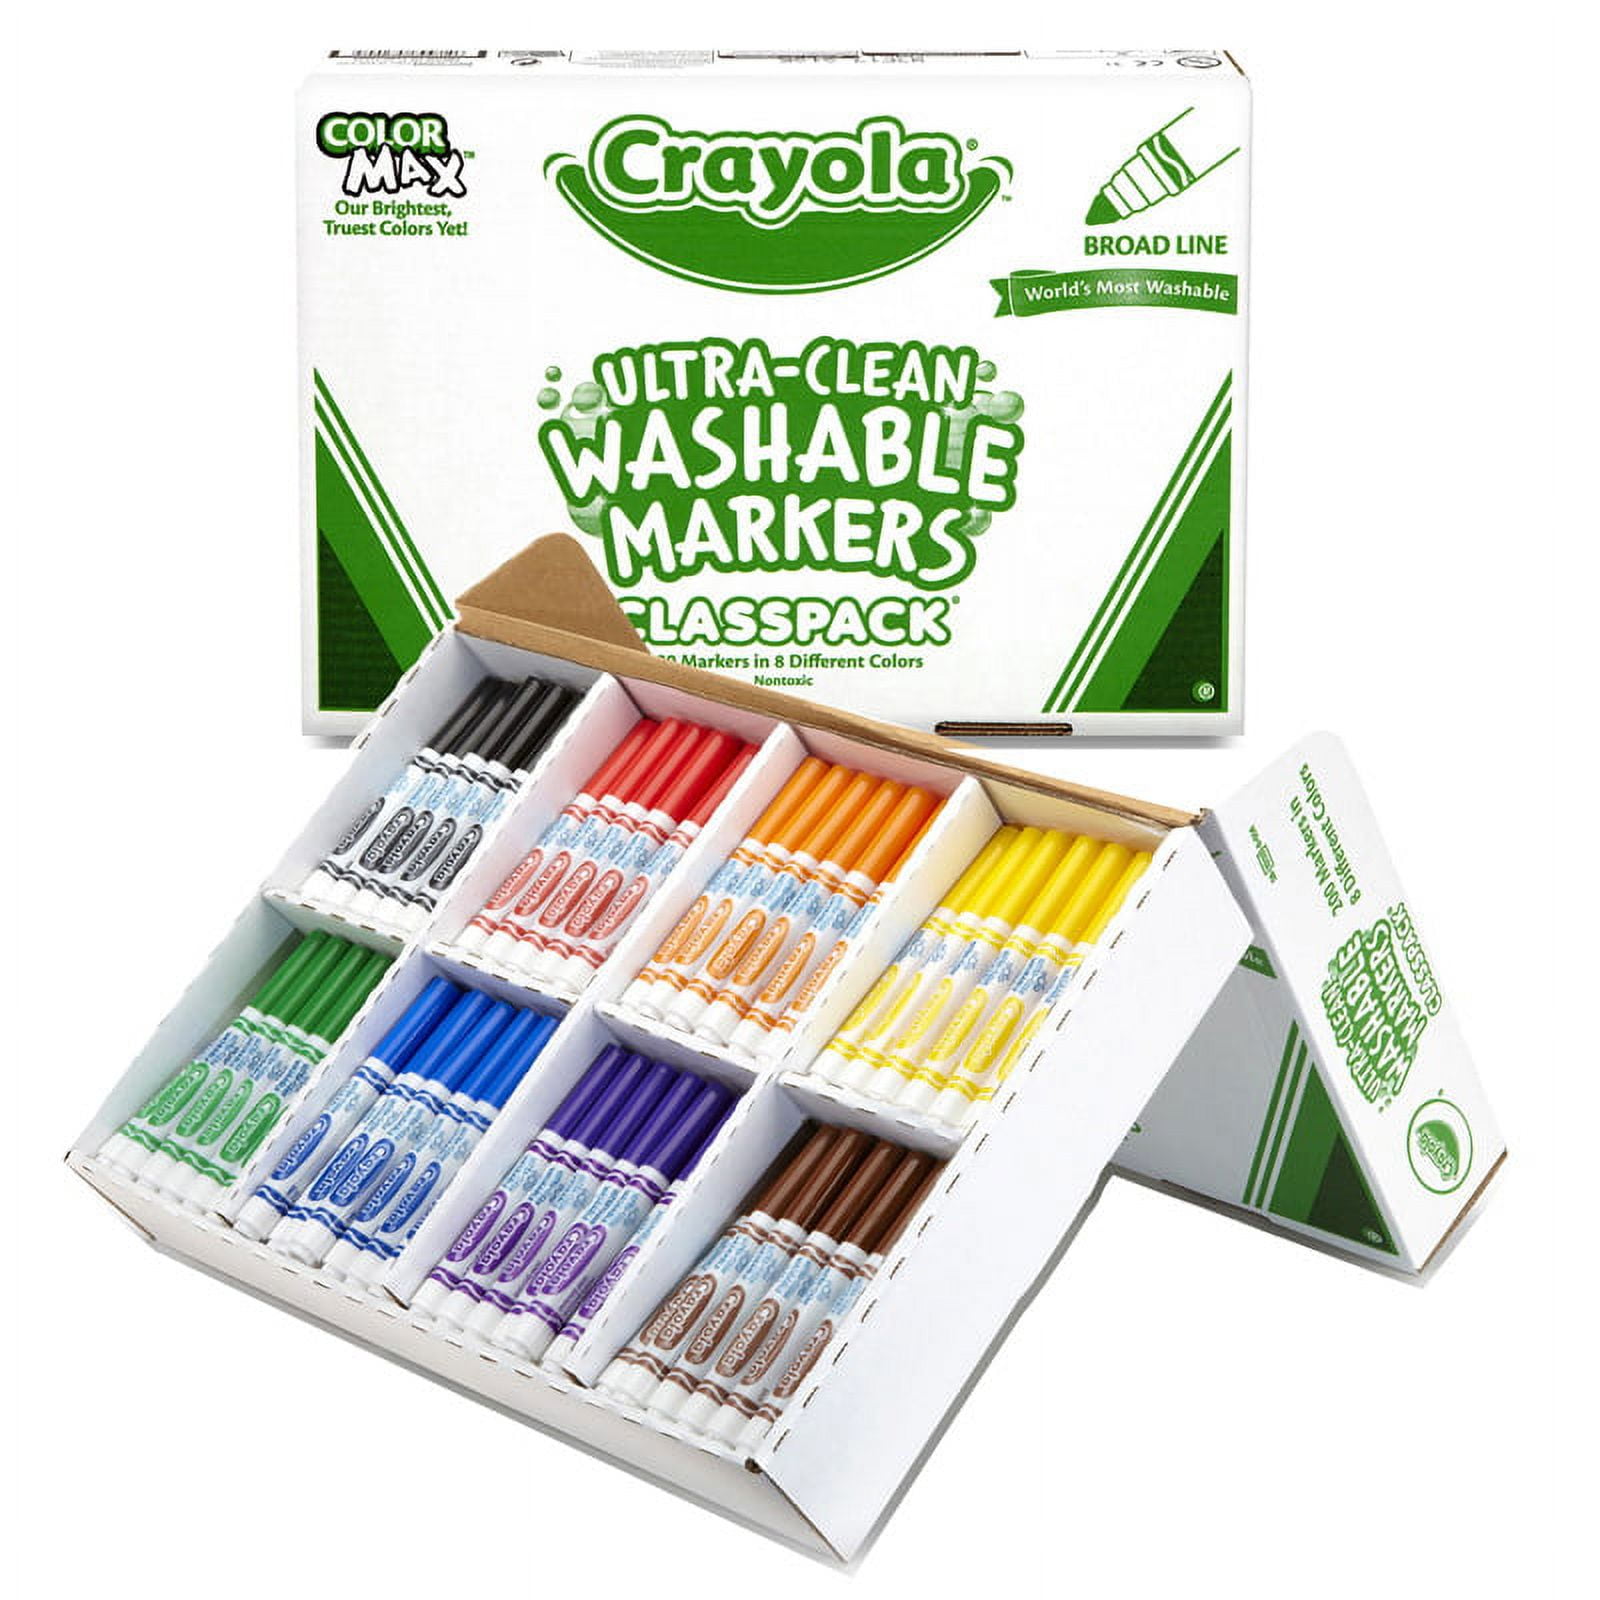 SILENART Chalk Markers Fine Tipe 1mm - 8 Pack - Dry & Wet Erase Marker Pens  - Chalkboad Markers for Kids, Liquid Chalk Markers Erasbale, Window Markers  for Car Glass Washable, 1mm